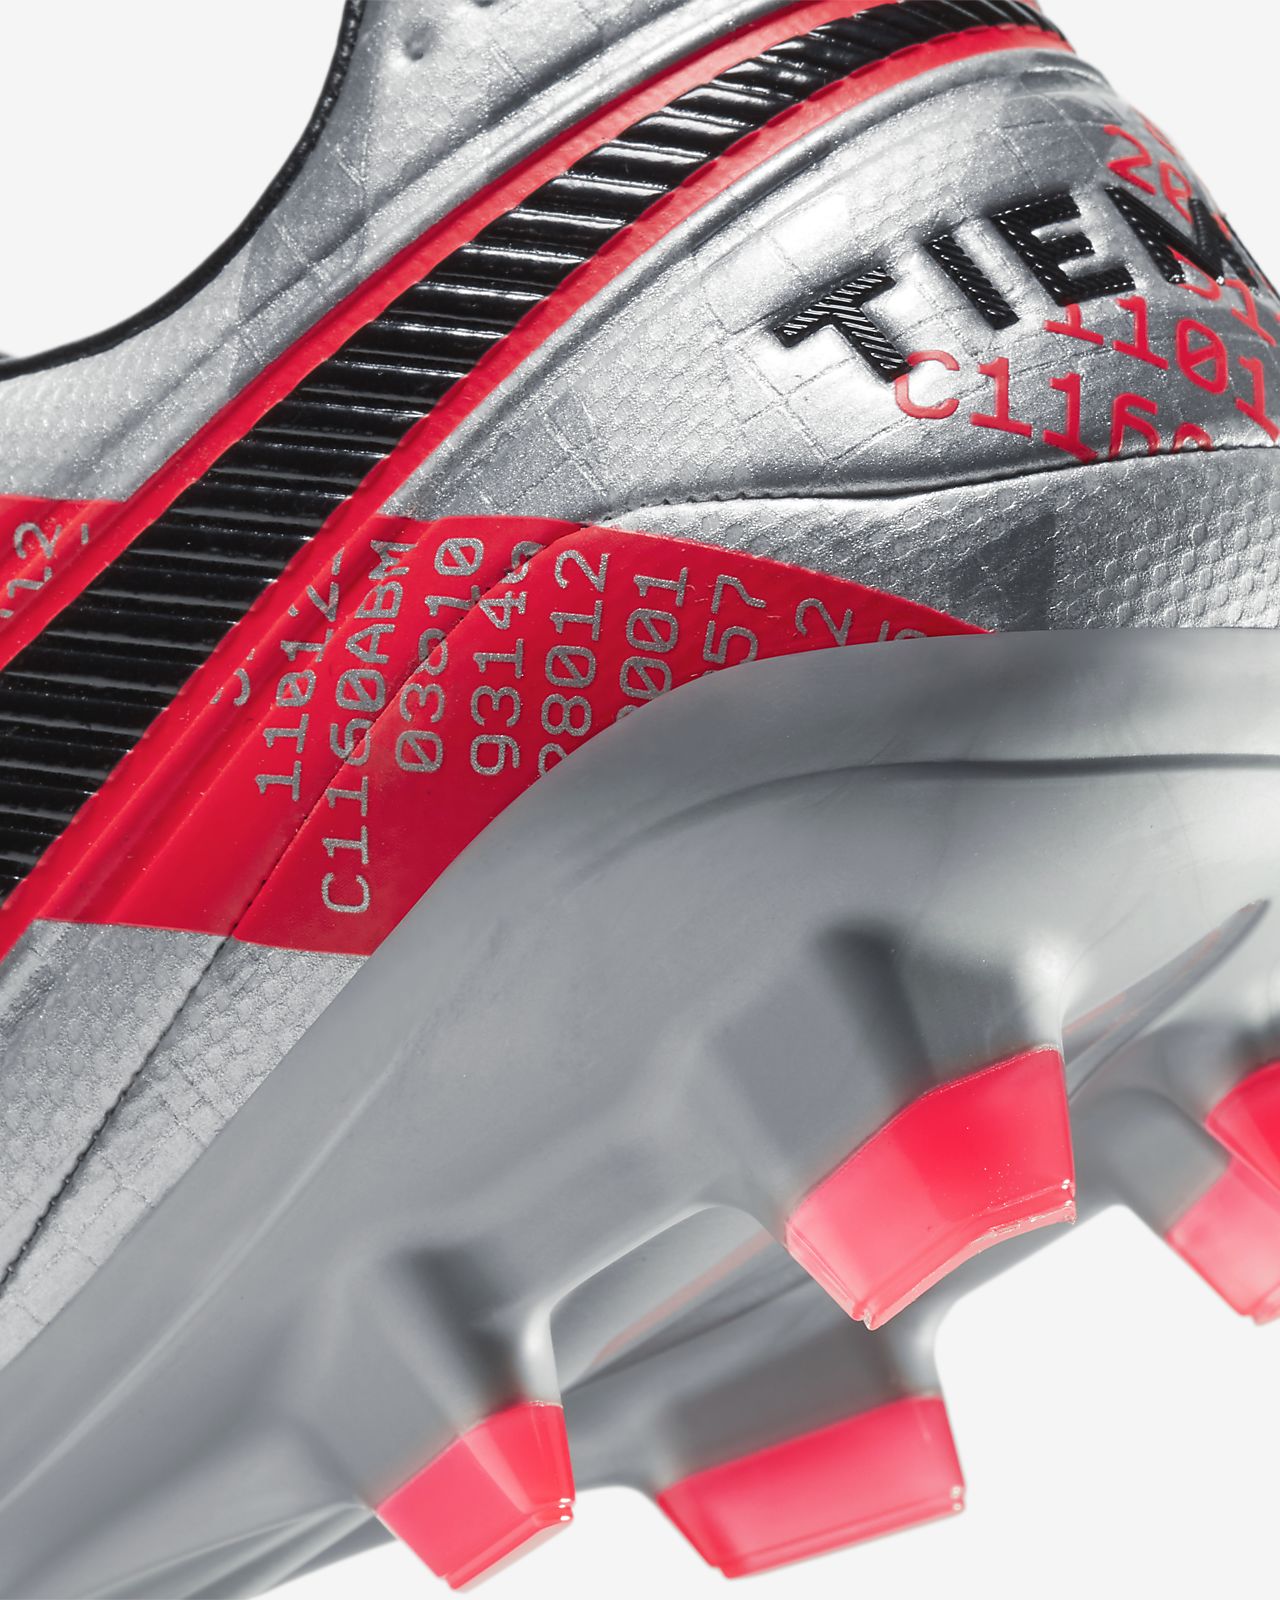 Nike Tiempo Legend 8 Pro FG Premium soccer